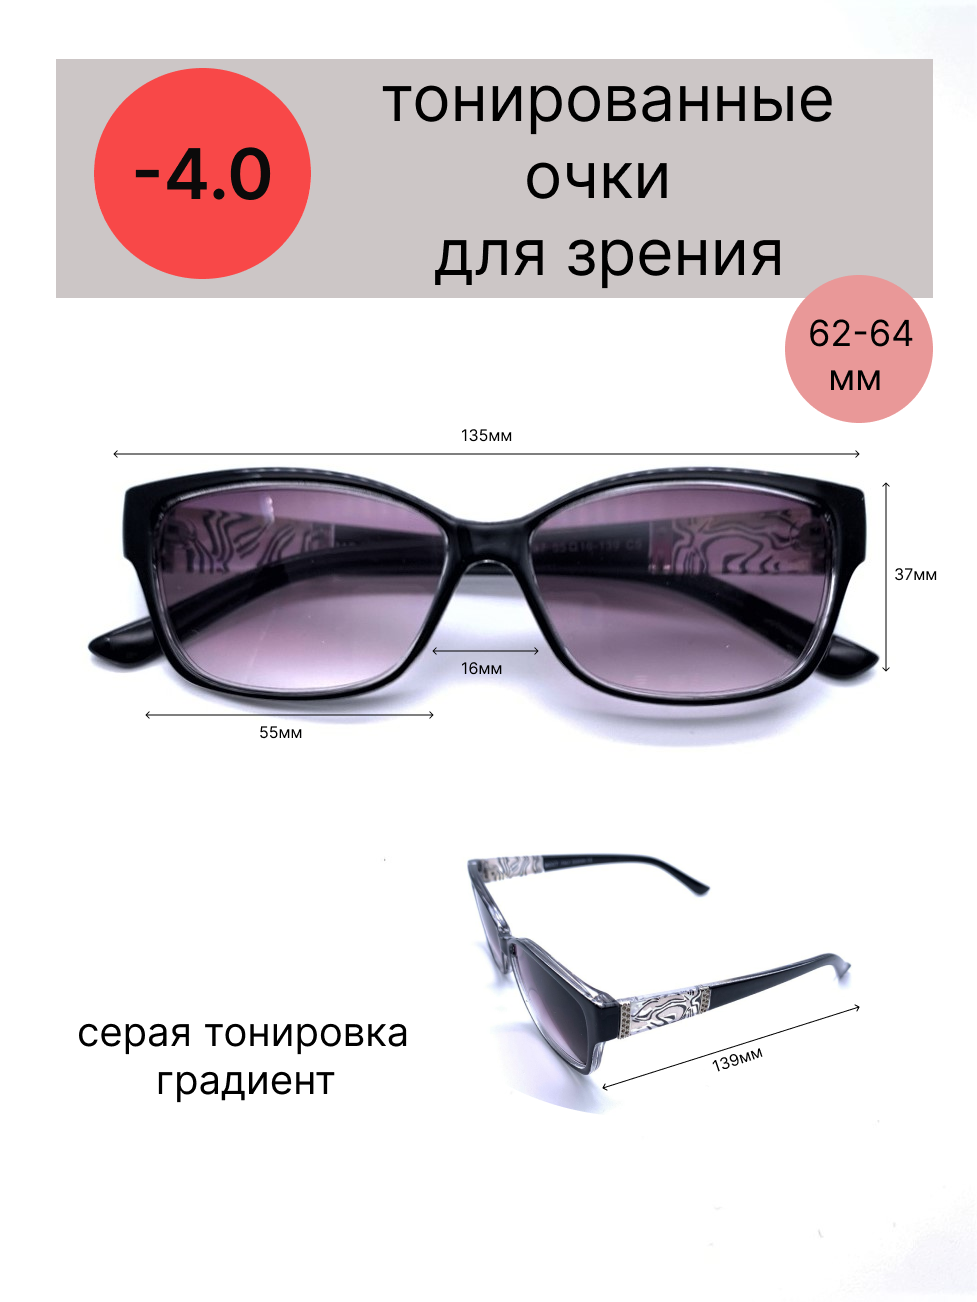 Тонированные очки с диоптриями -4.0